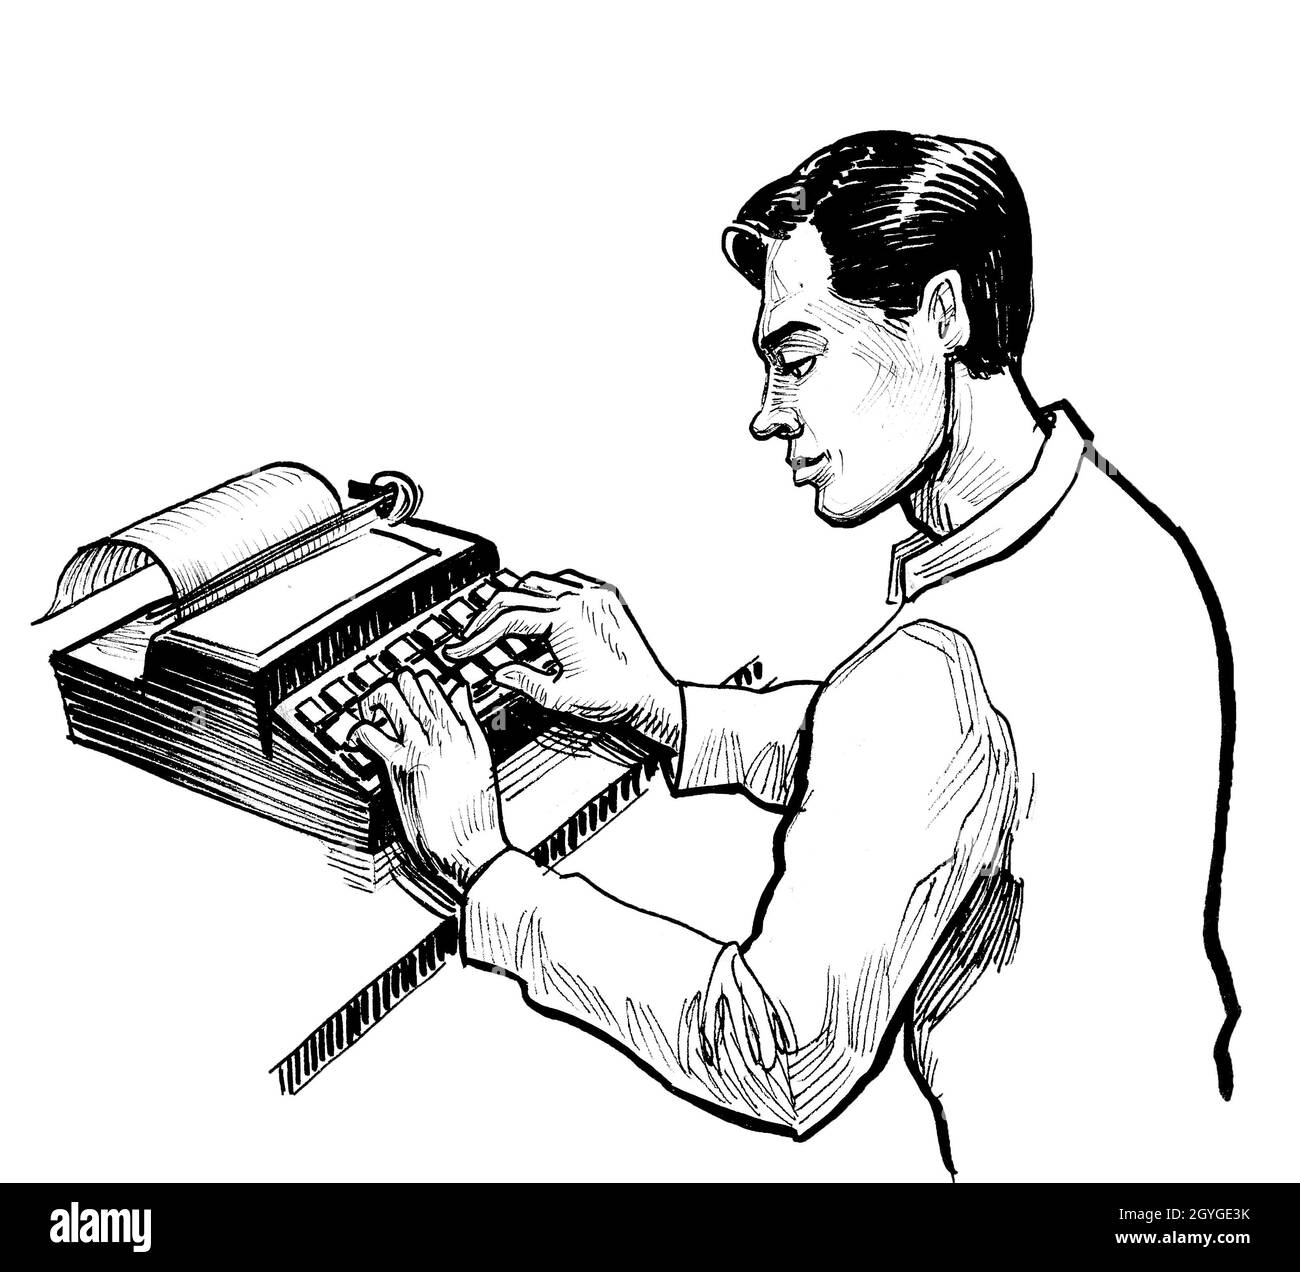 Écriture dactylographiée sur une machine à écrire rétro.Dessin noir et blanc Banque D'Images